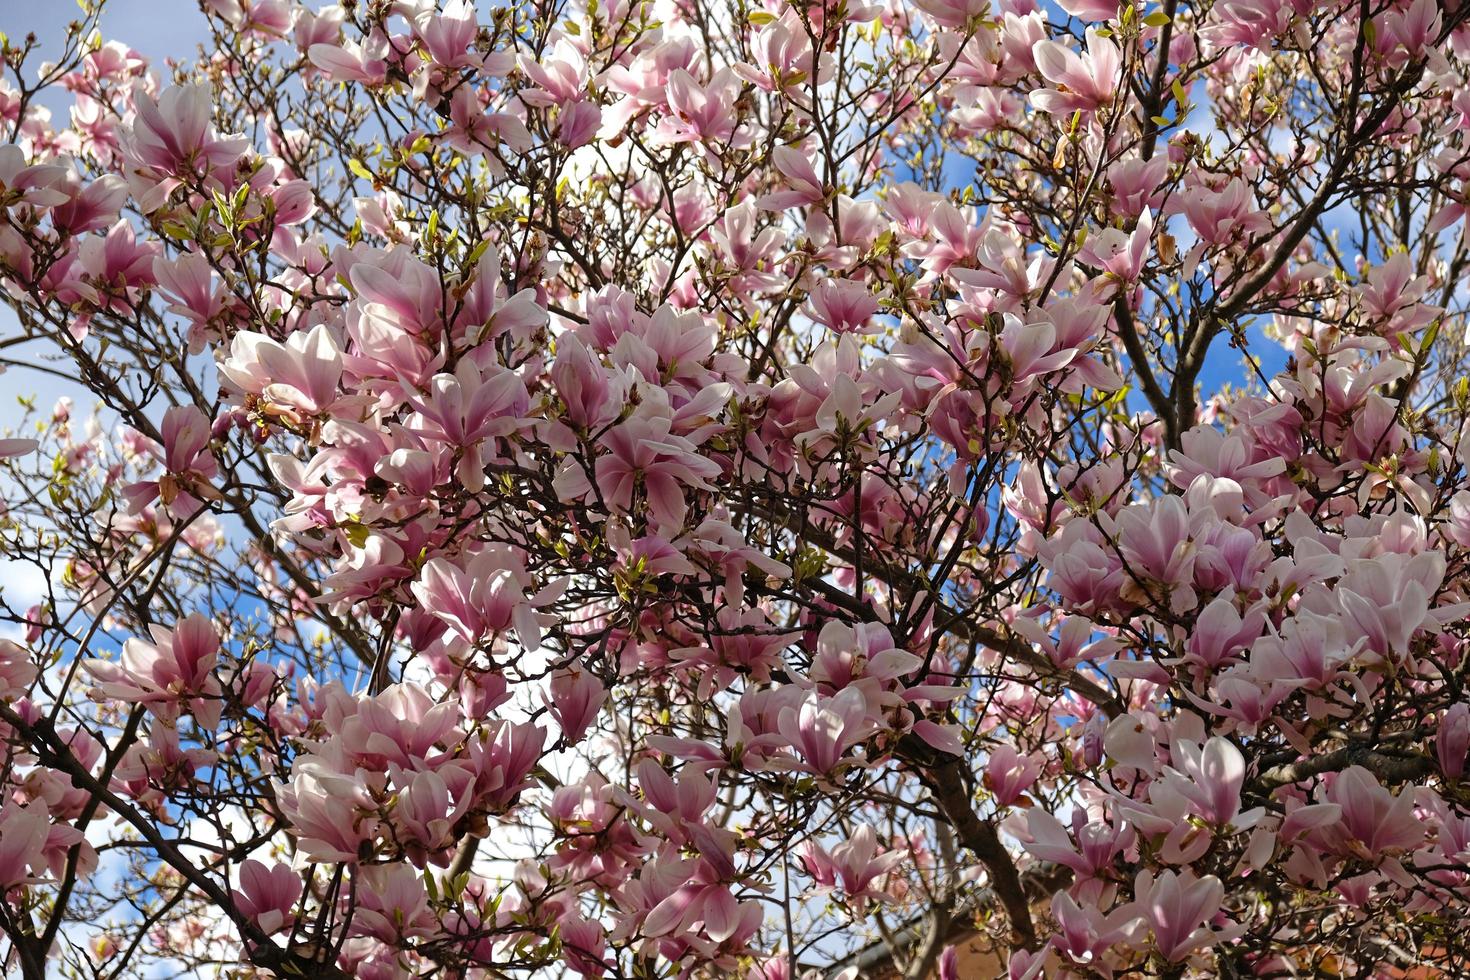 capullos de magnolia rosa, flores sin abrir. árboles en flor a principios  de primavera 14180376 Foto de stock en Vecteezy